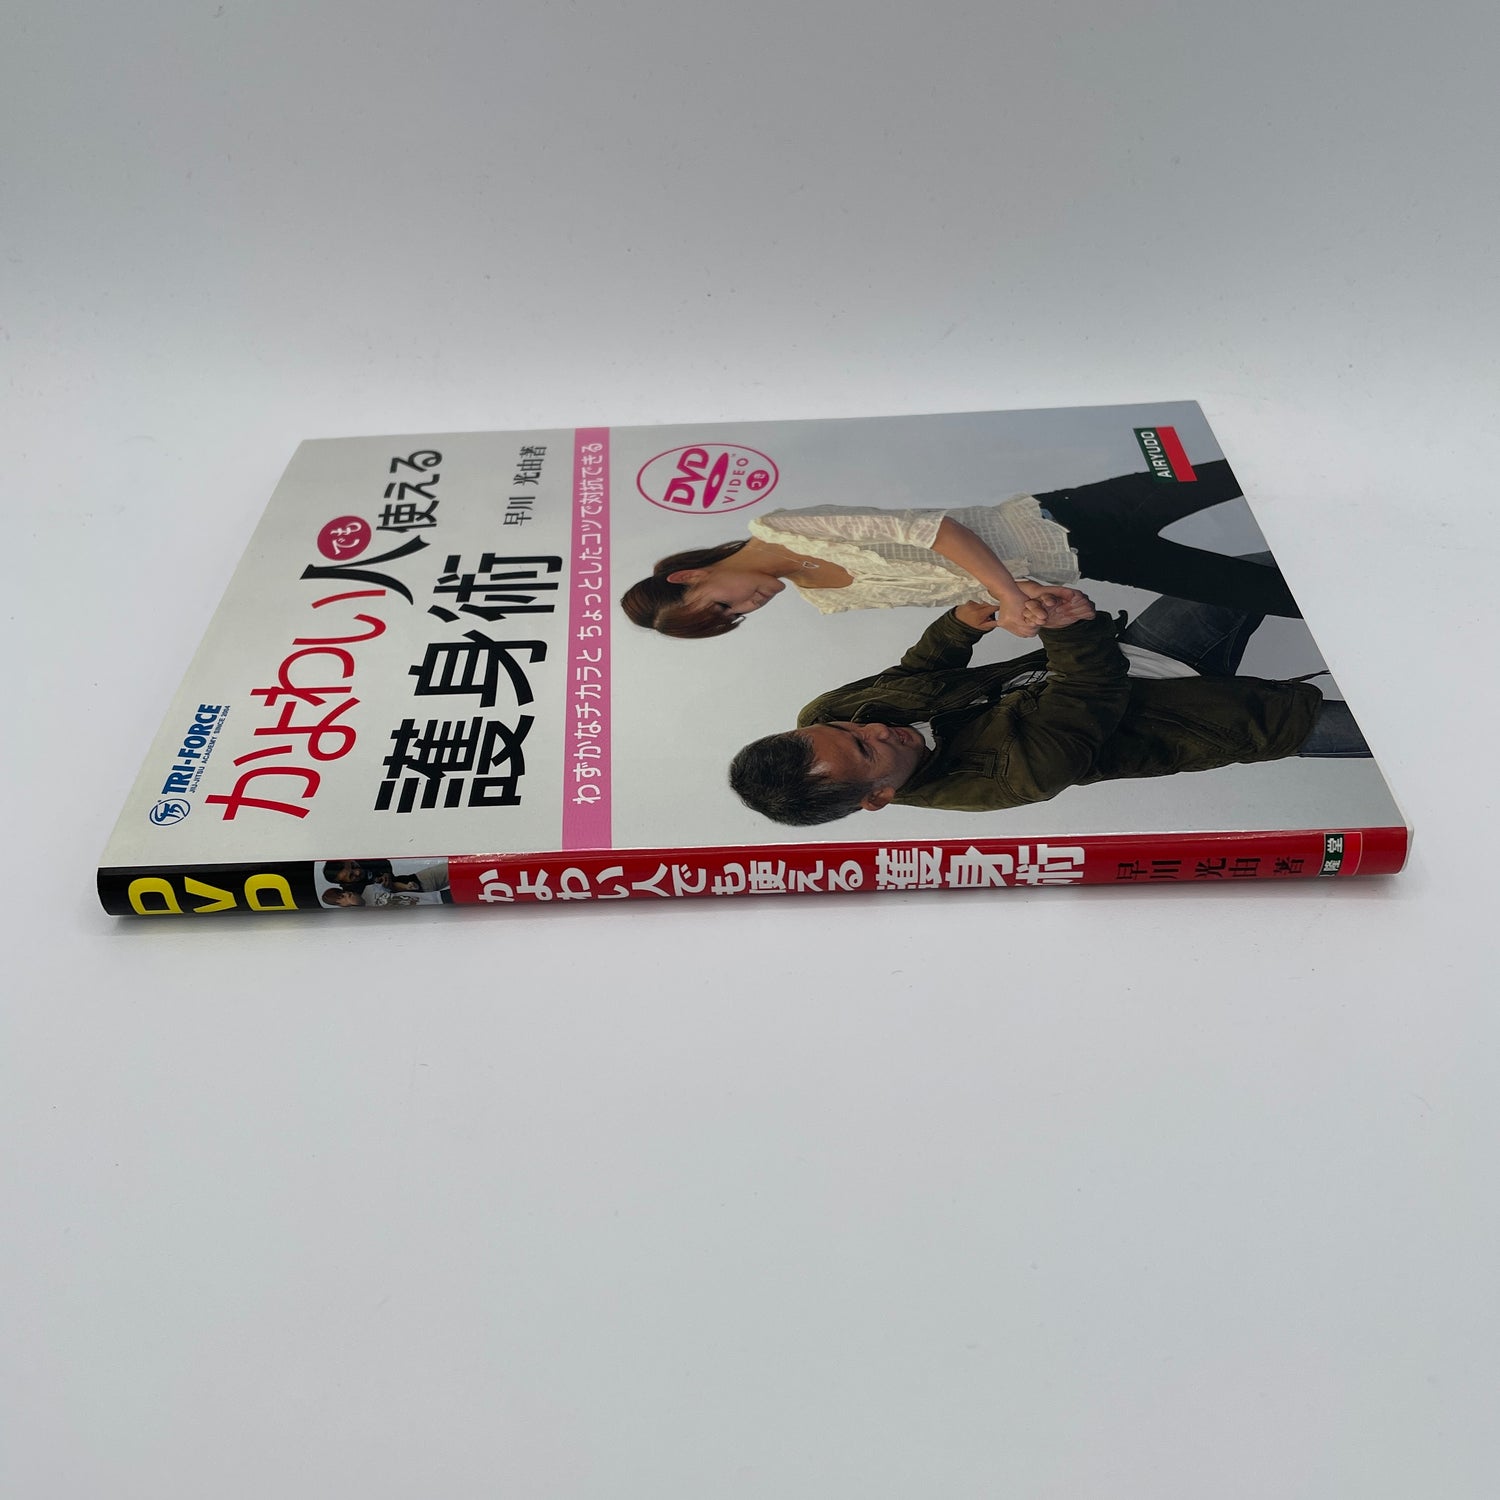 Autodefensa para mujeres Libro y DVD de Mitsuyoshi Hayakawa